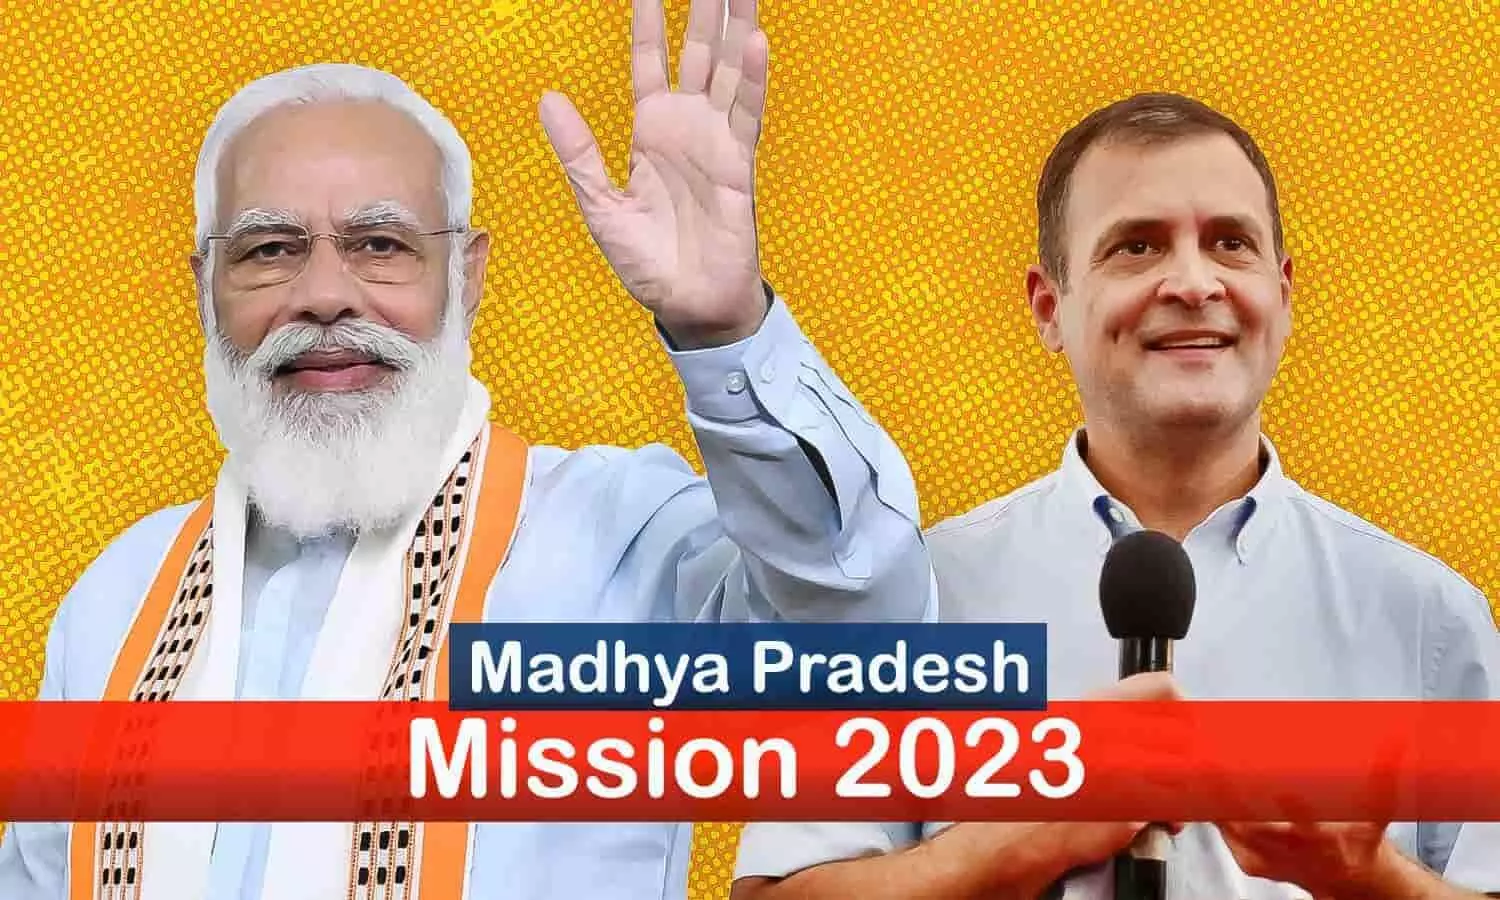 मिशन 2023 के लिए सक्रिय हुई भाजपा-कांग्रेस: पीएम मोदी 5 बार MP आकर बड़ी सौगातें देंगे, तो राहुल गांधी 16 दिन गुजारेंगे